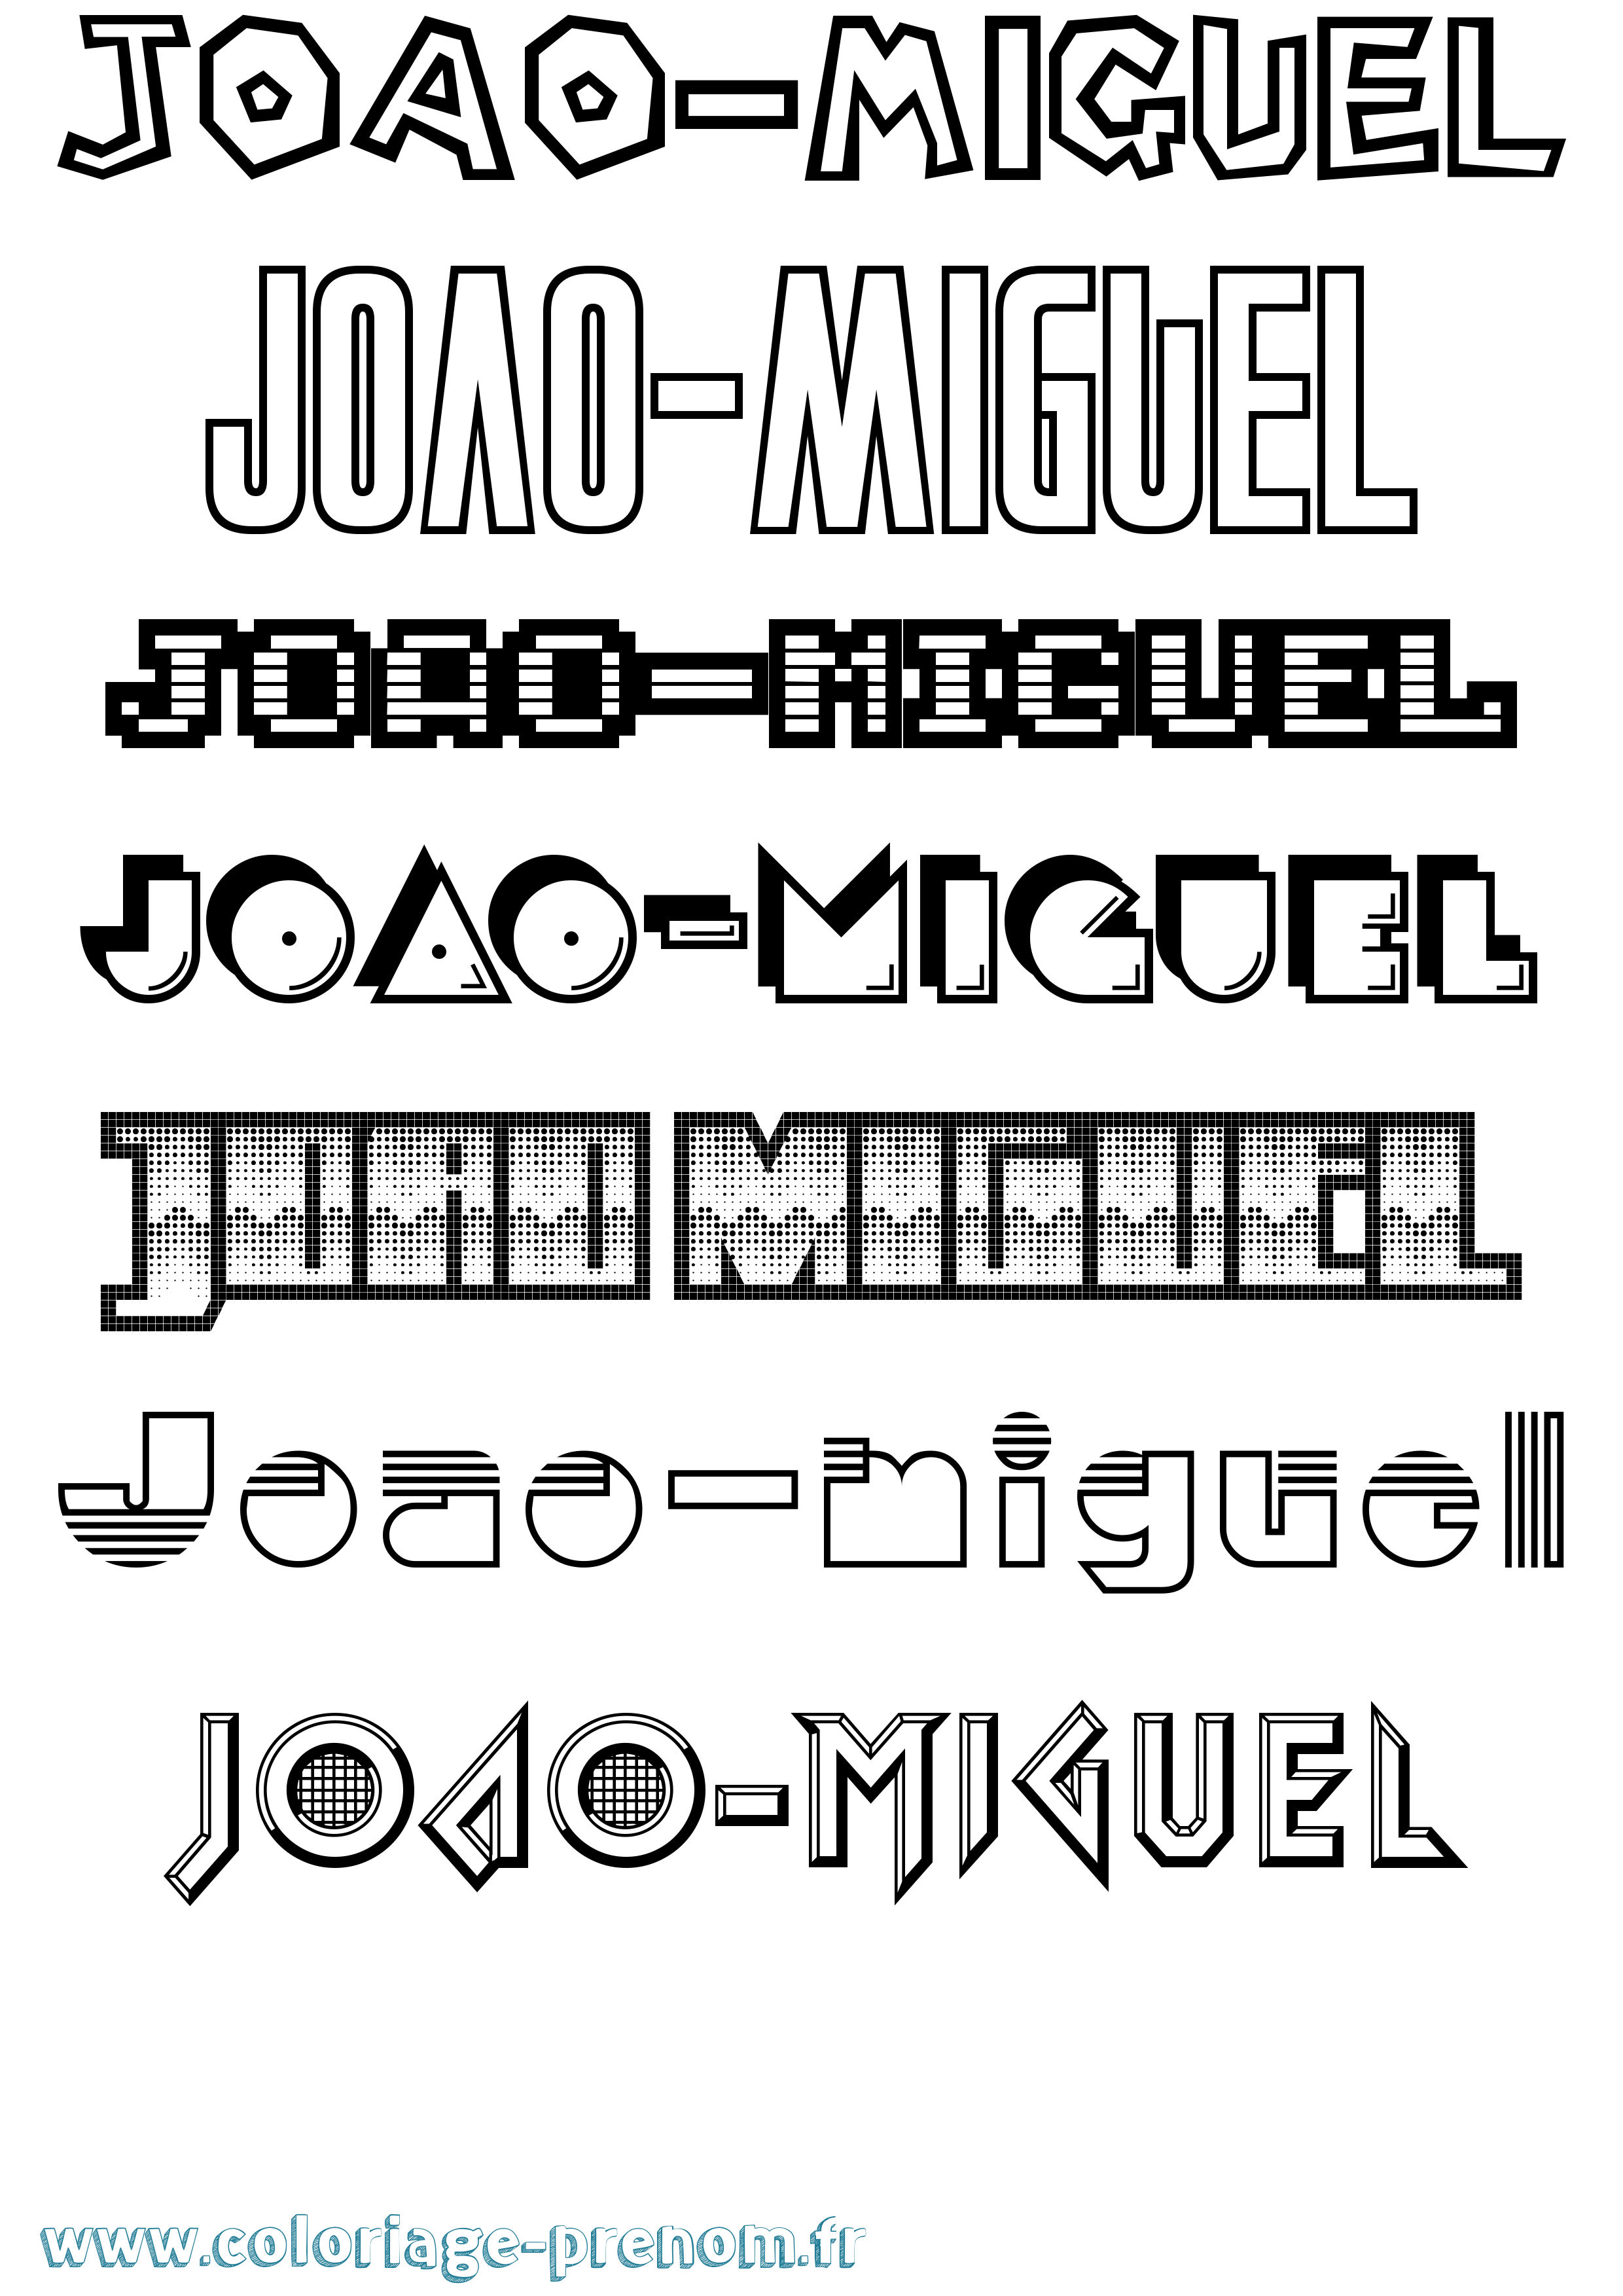 Coloriage prénom Joao-Miguel Jeux Vidéos